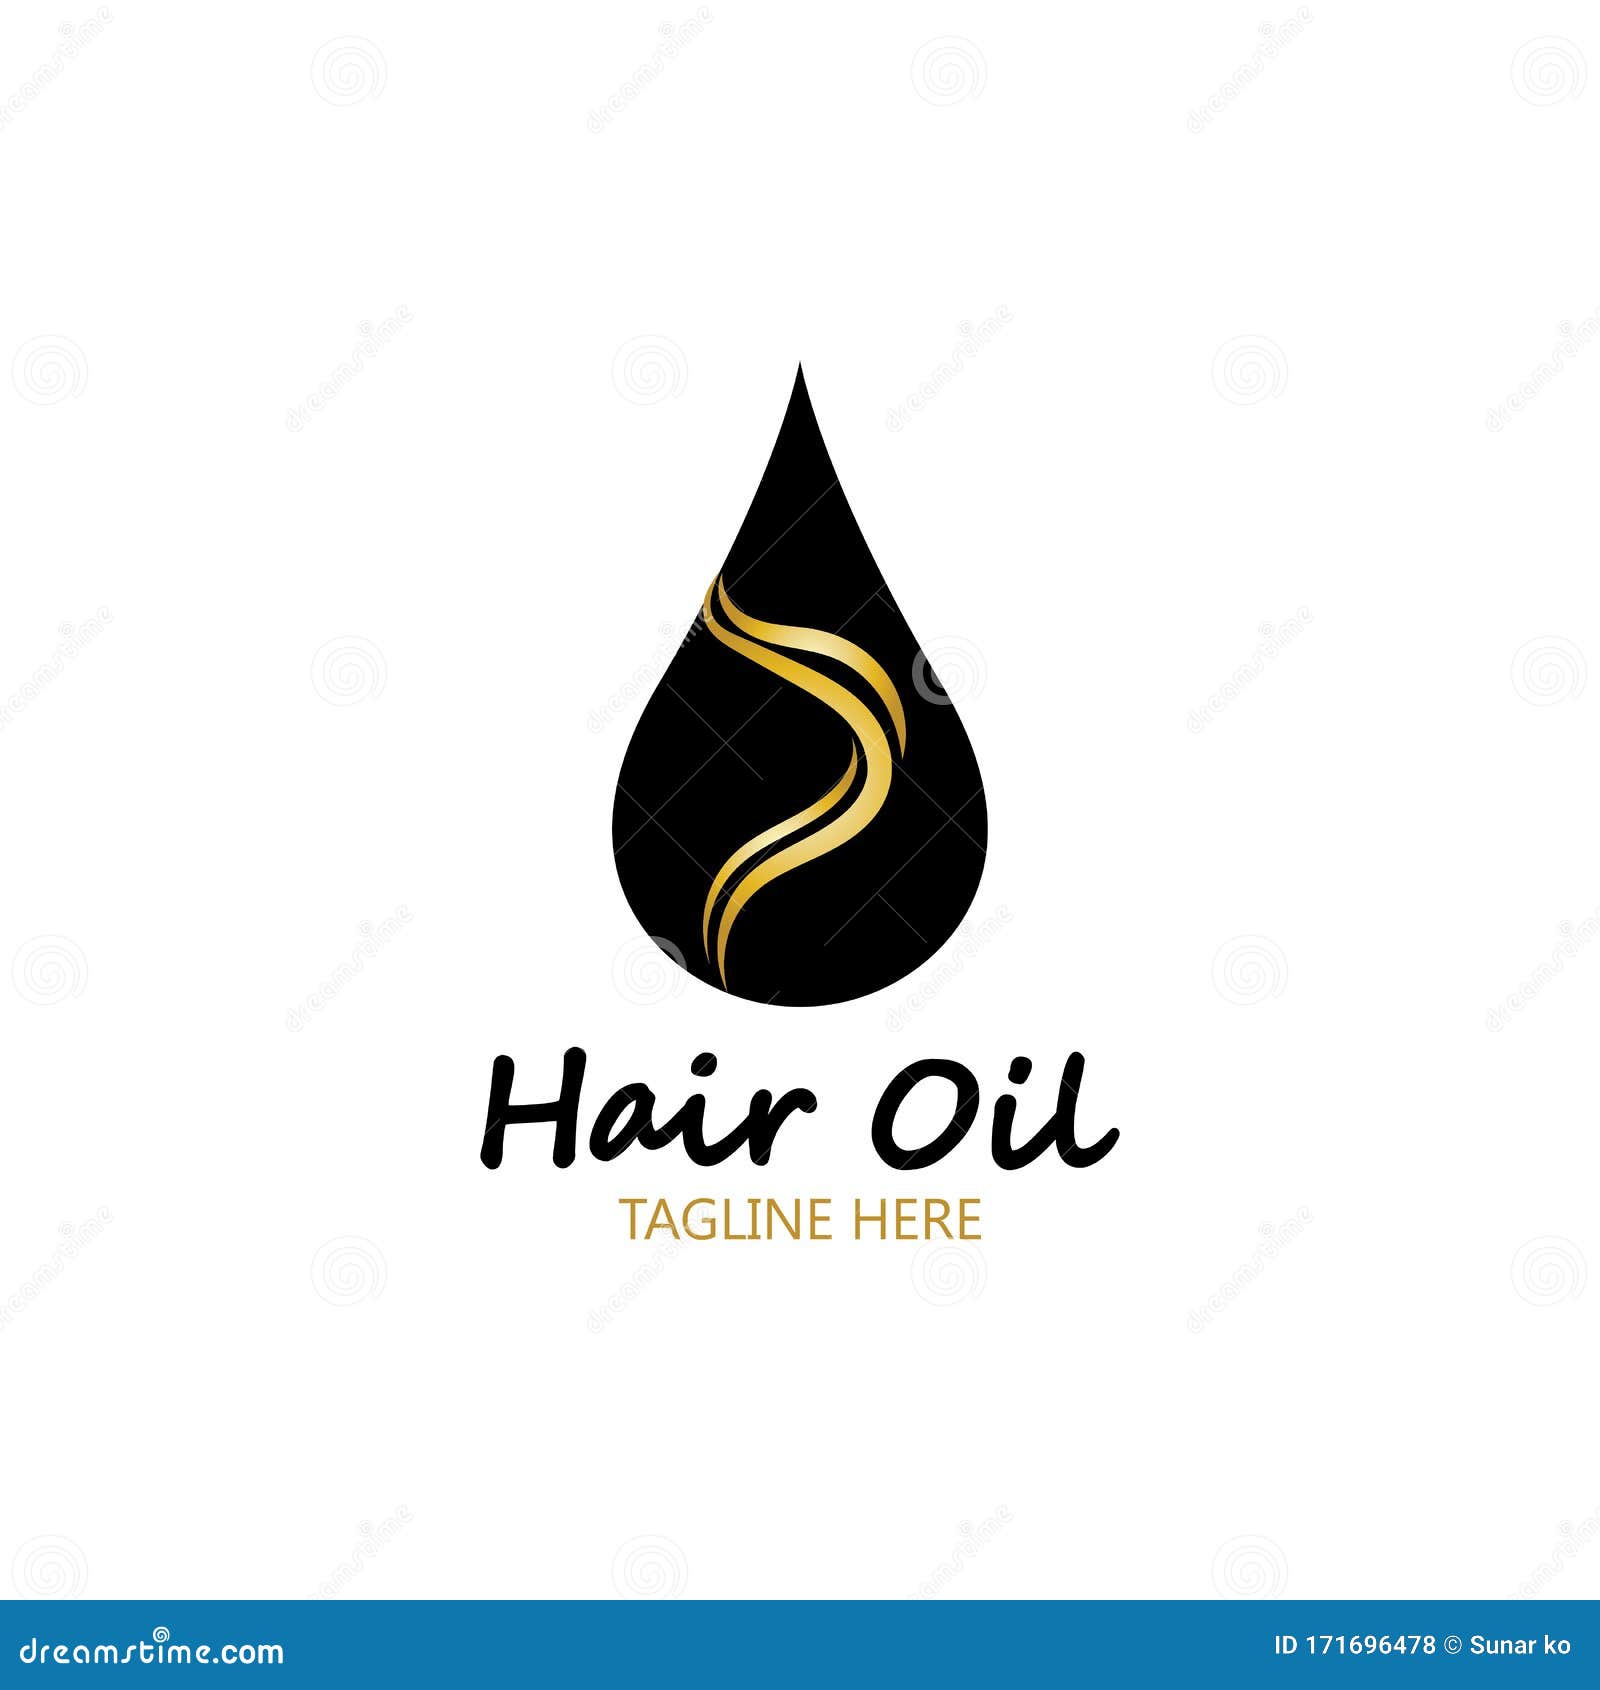 Packaging Design  Label Design  Box Design  Hair Oil  Branding   Graphic Designing  Hair oil Oils Hair